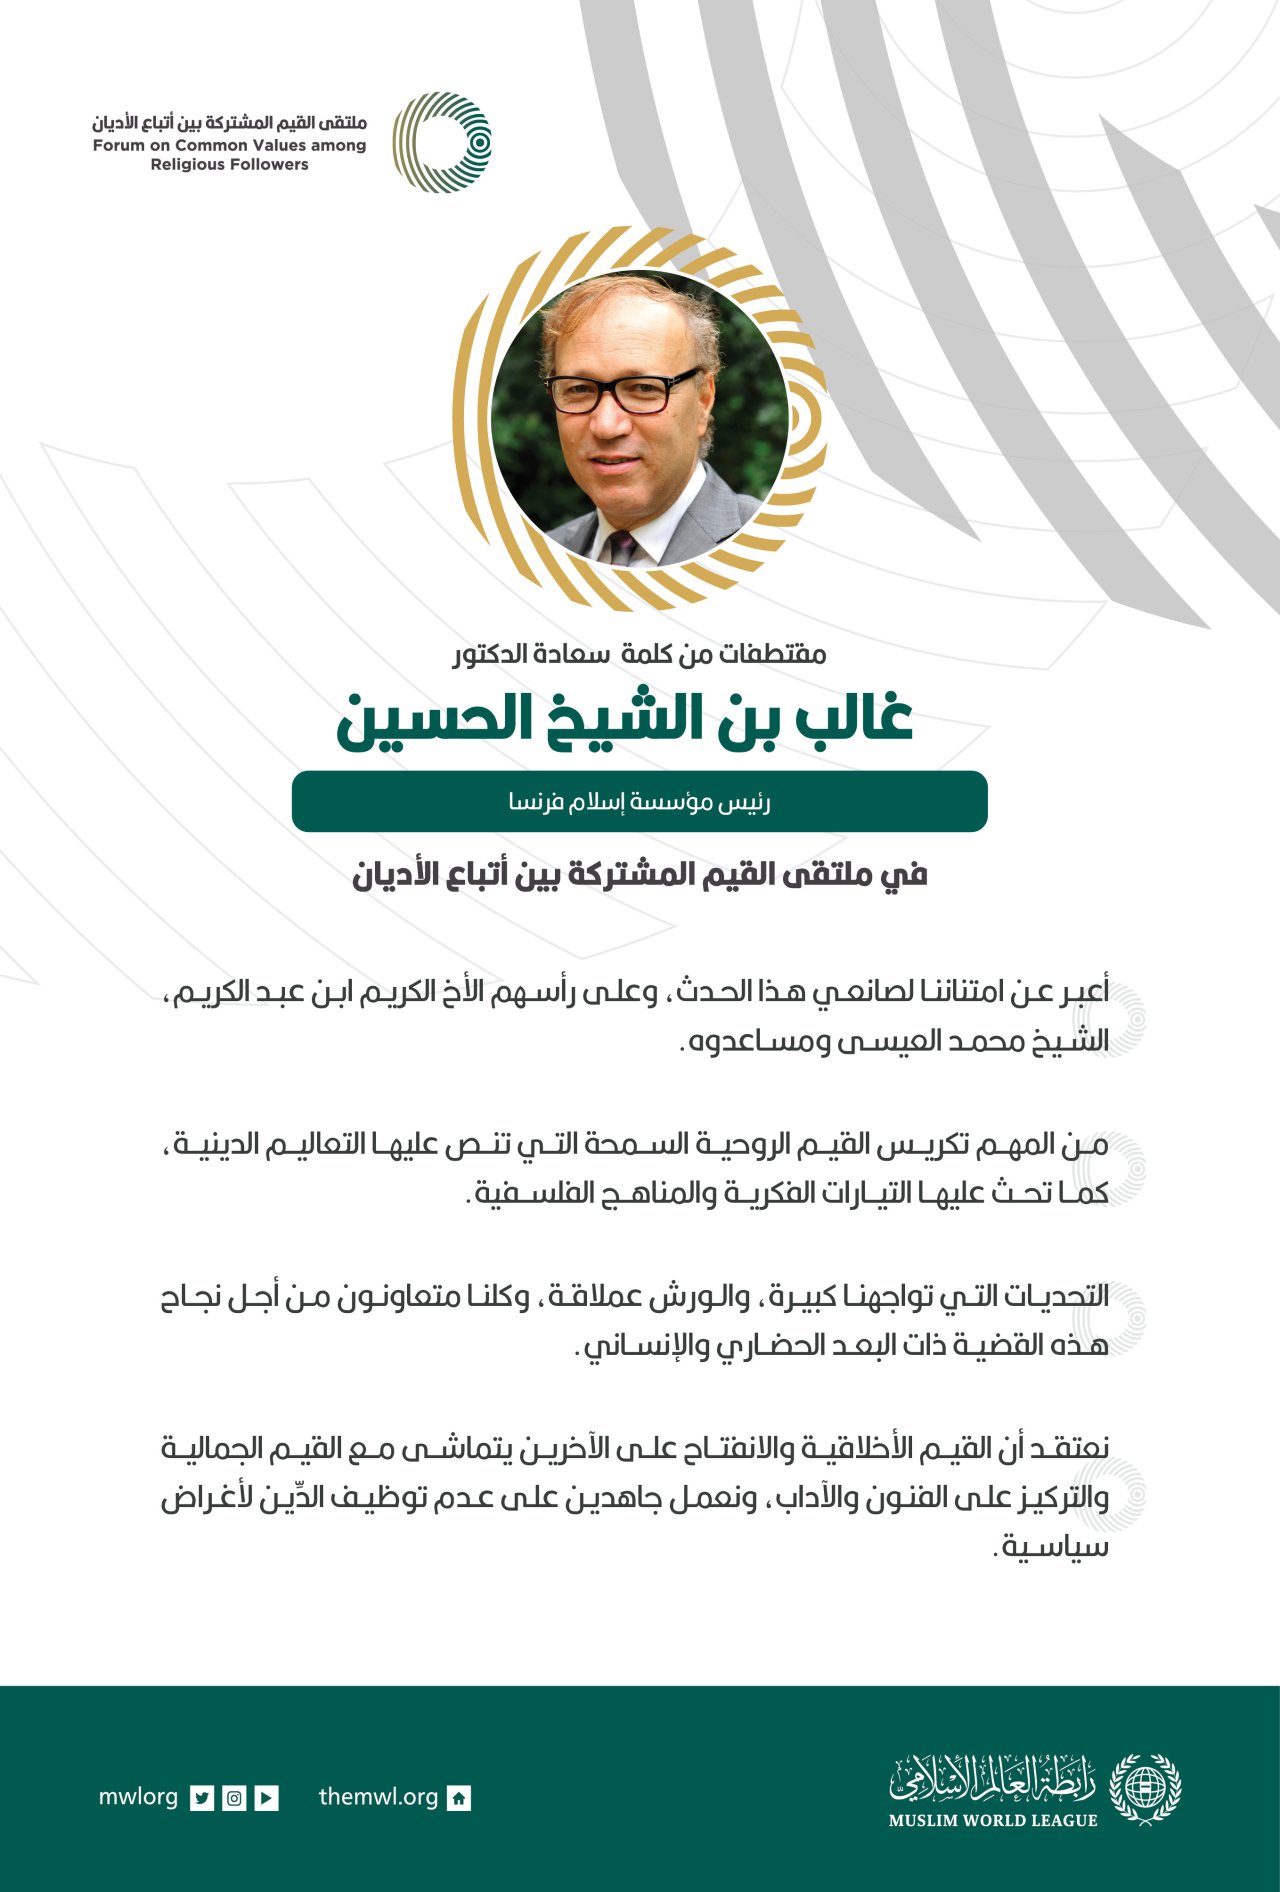 مقتطفات من كلمة رئيس مؤسسة إسلام فرنسا، ‏سعادة الدكتور غالب بن الشيخ الحسين، خلال ملتقى القيم المشتركة بالرياض‬⁩: